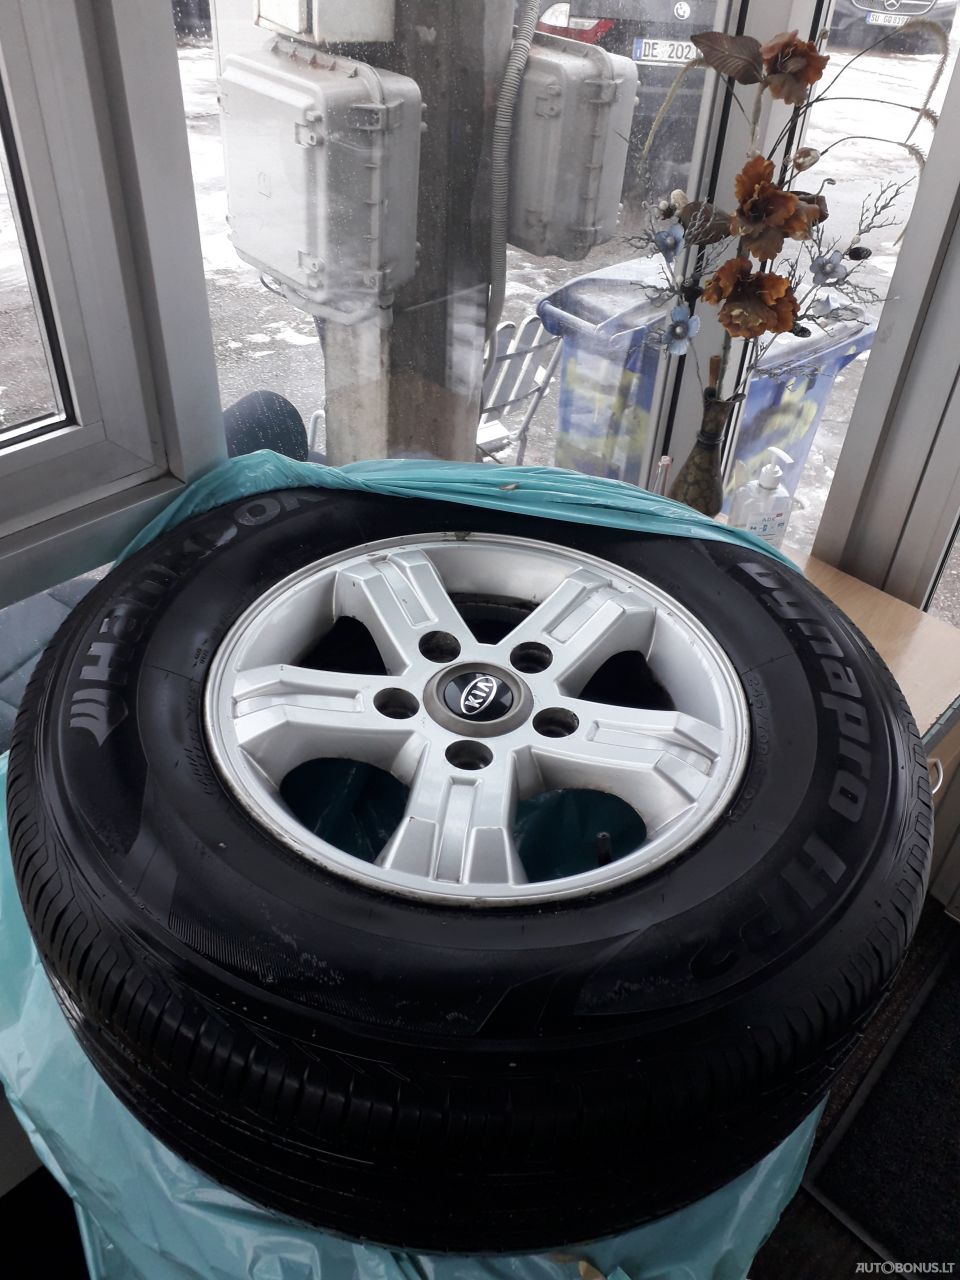 Hankook Radial Tubeless M+s summer tyres | 5